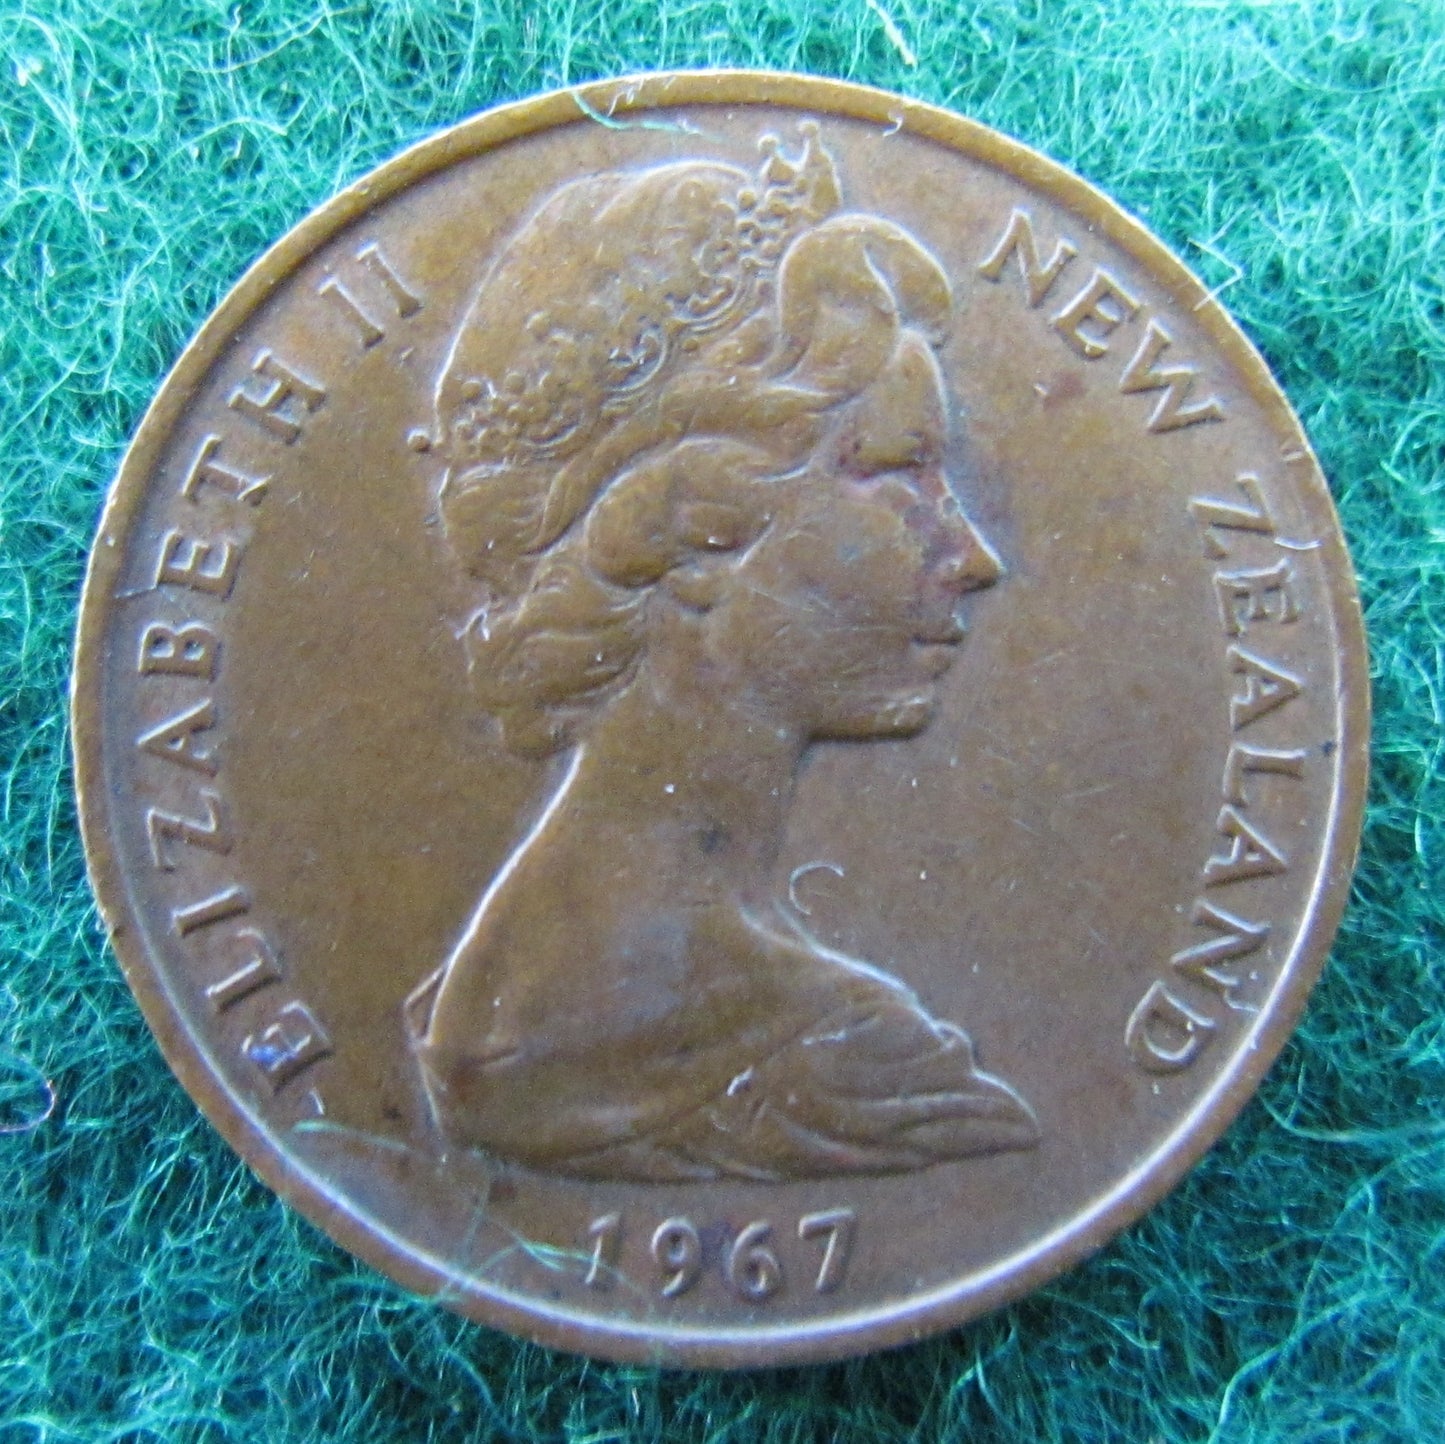 New Zealand 1967 2 Cent Queen Elizabeth II Coin